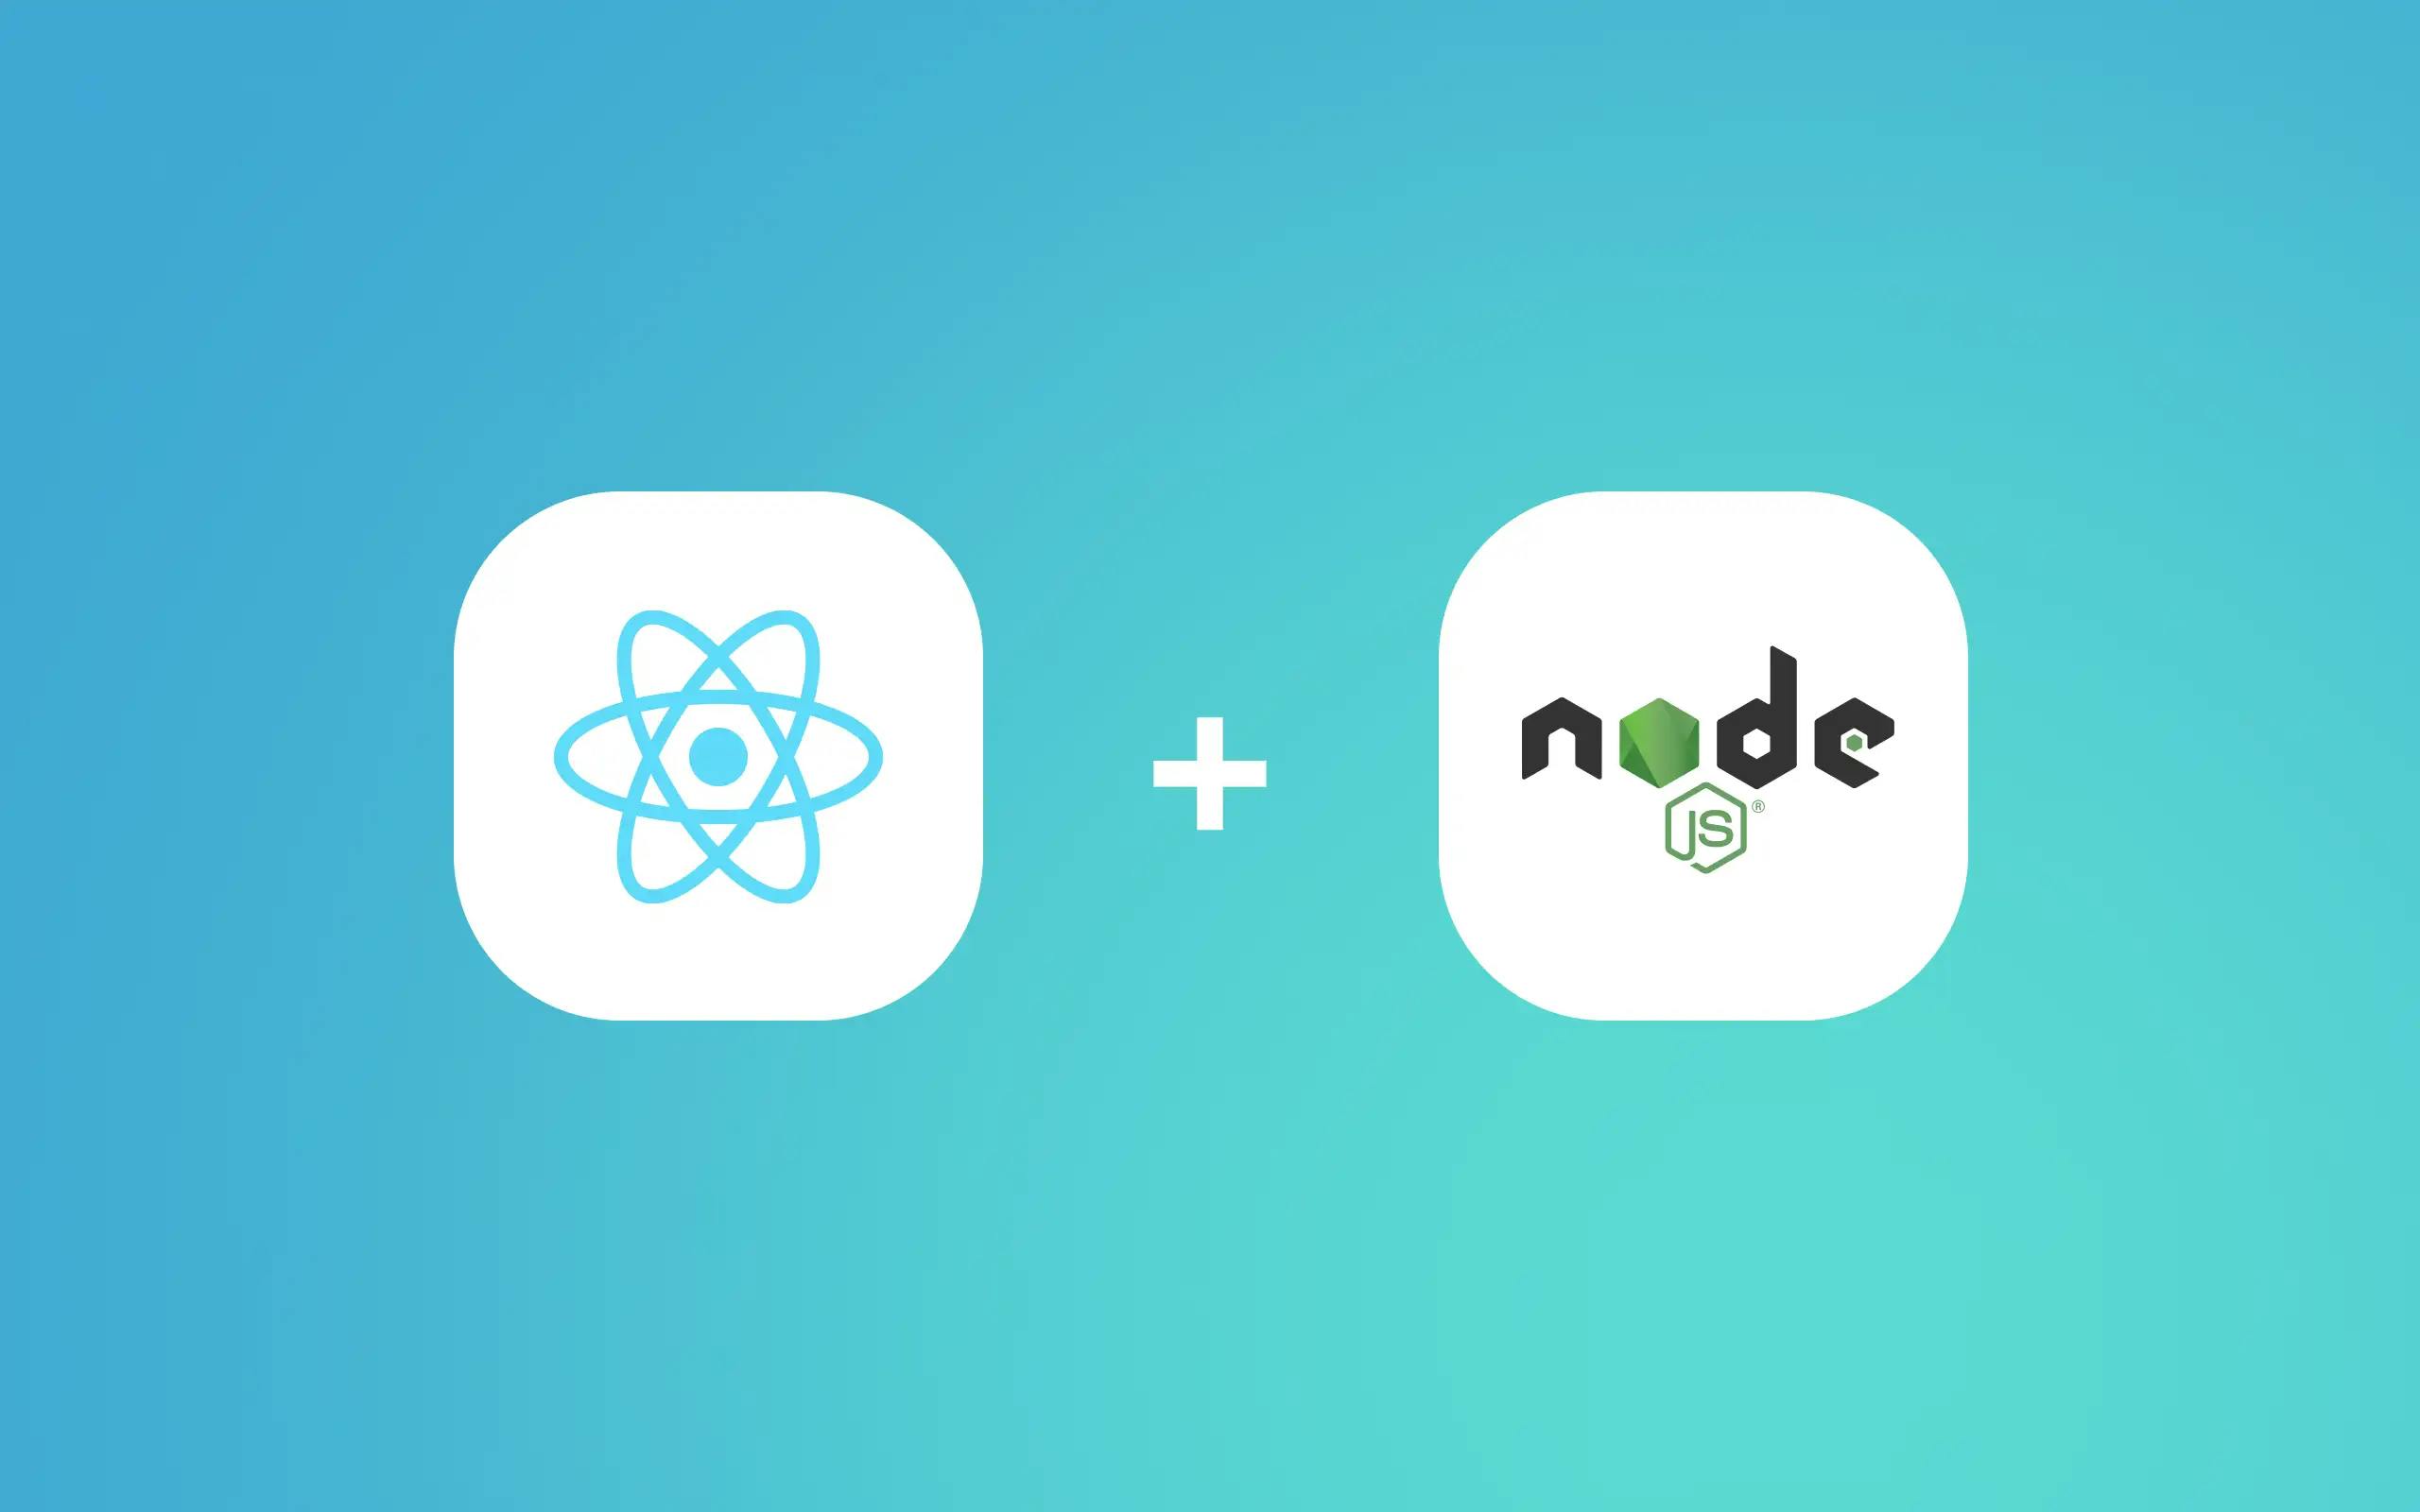 React and Node.js logos